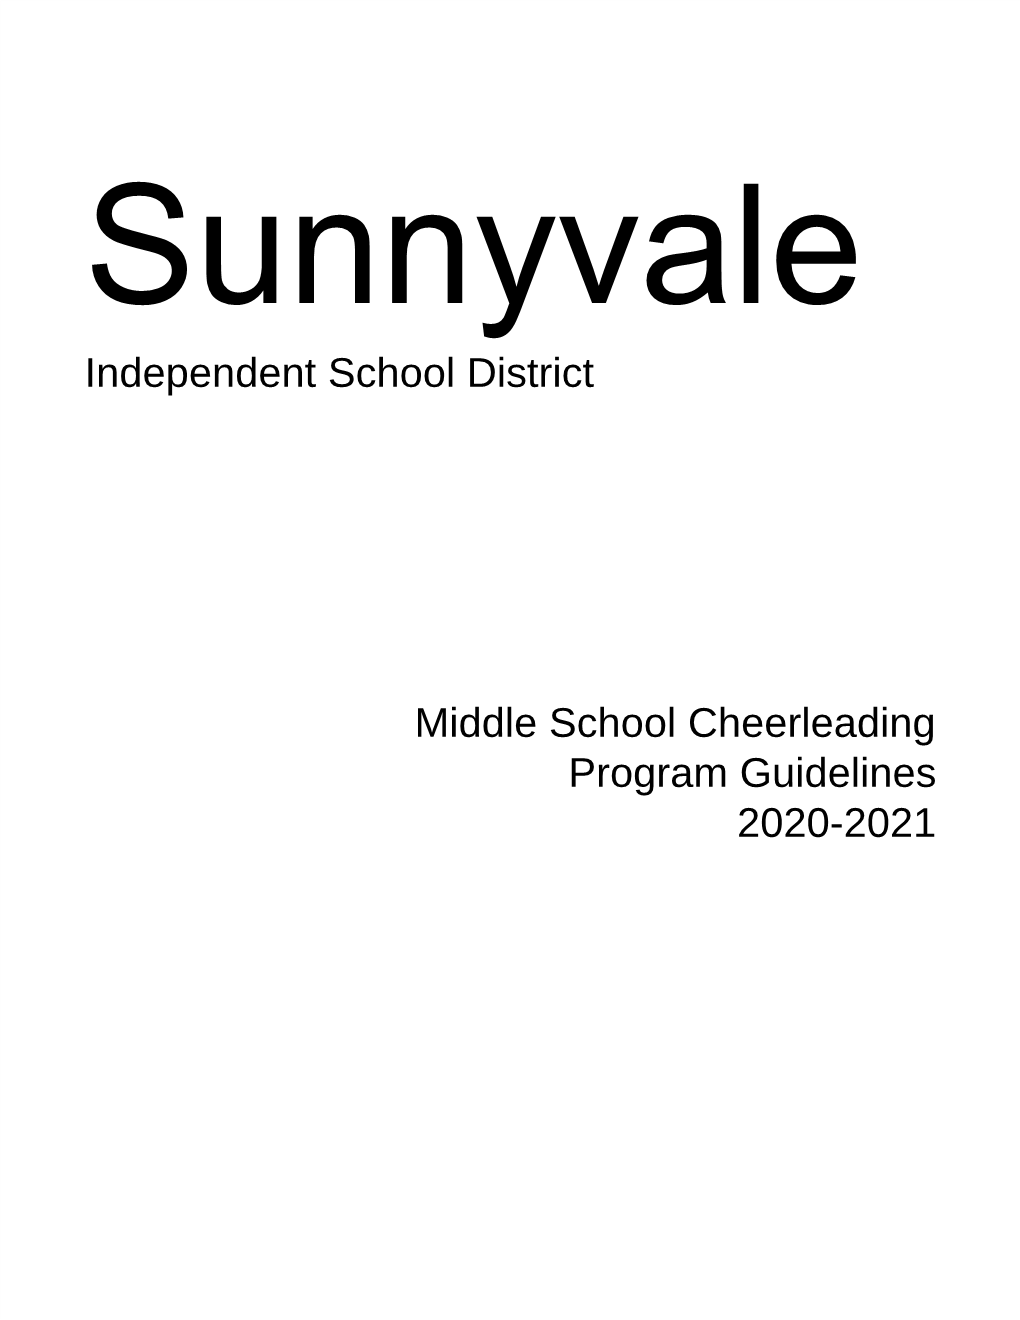 Independent School District Middle School Cheerleading Program